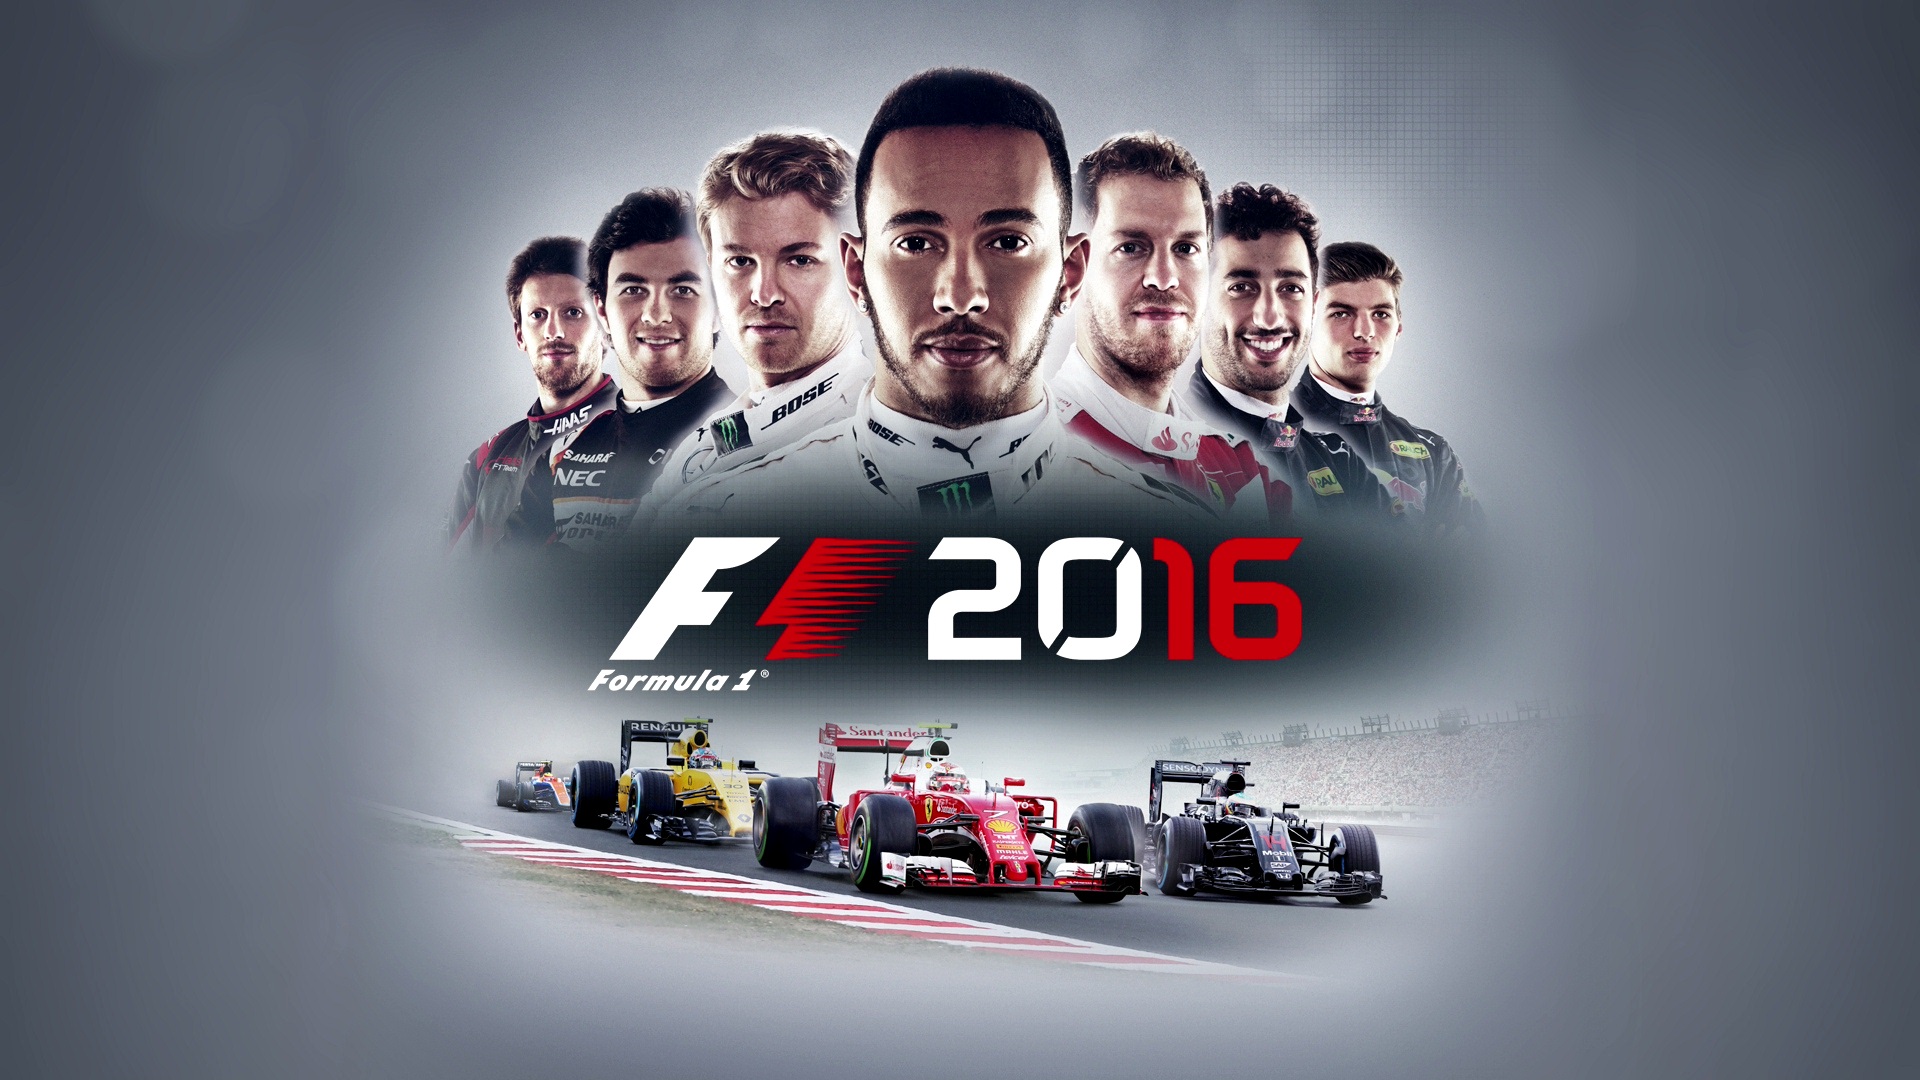 24 1 2016. F1 2016 PC. Ф1 2016 игра. F1 2016 game. Formula 1 2016.